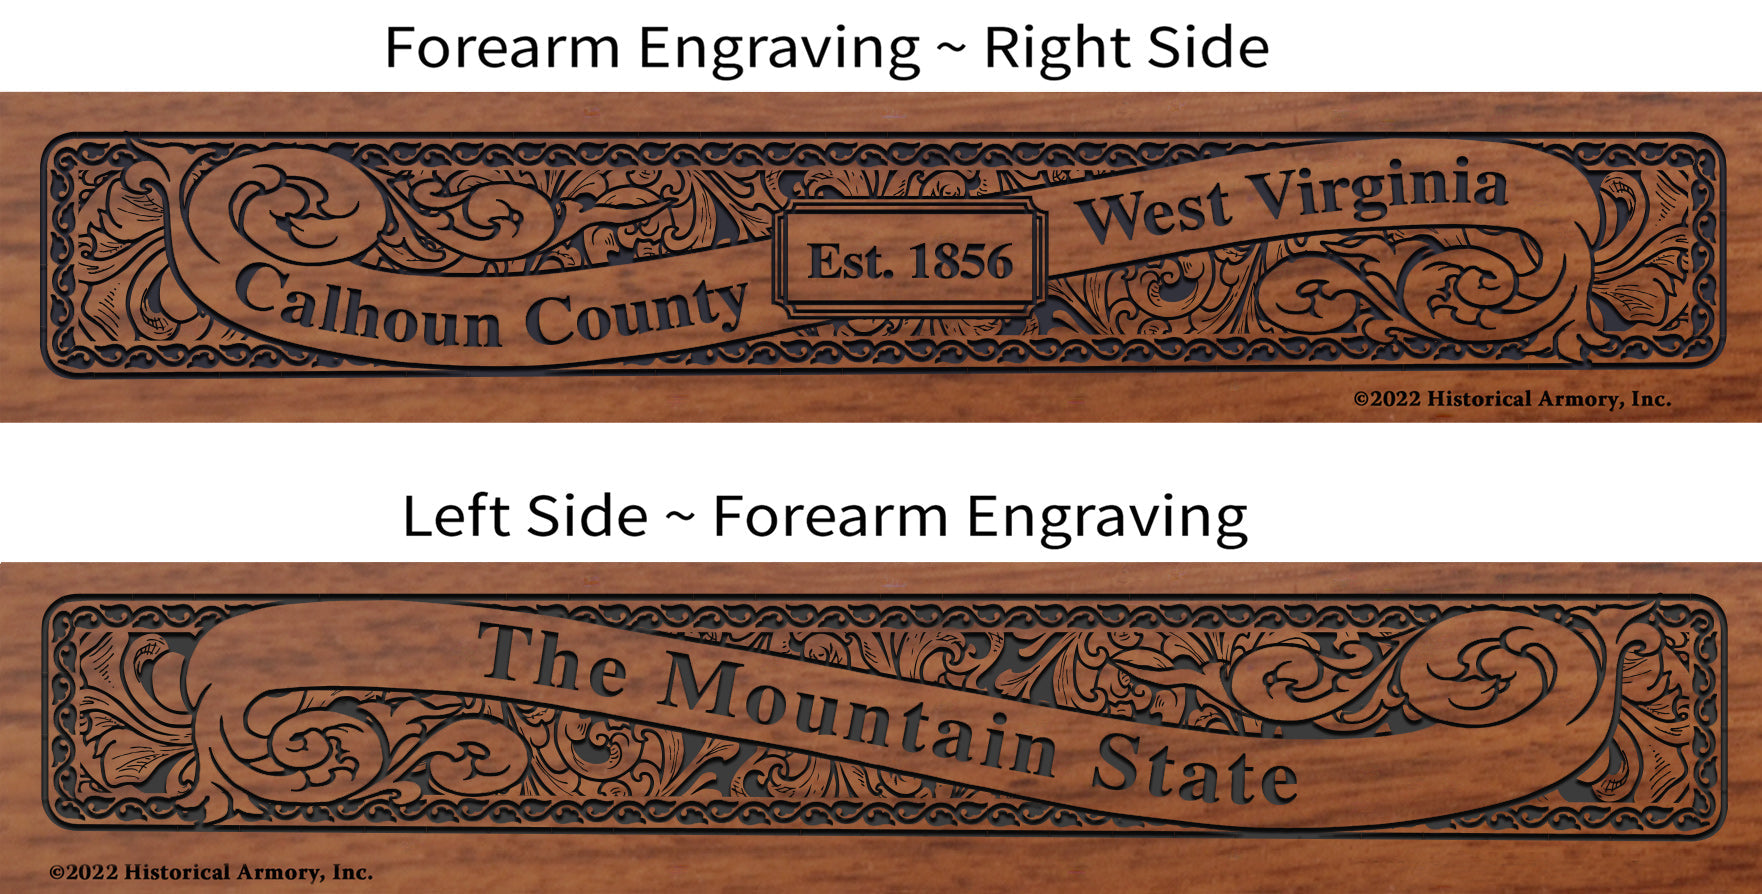 Calhoun County West Virginia Engraved Rifle Forearm